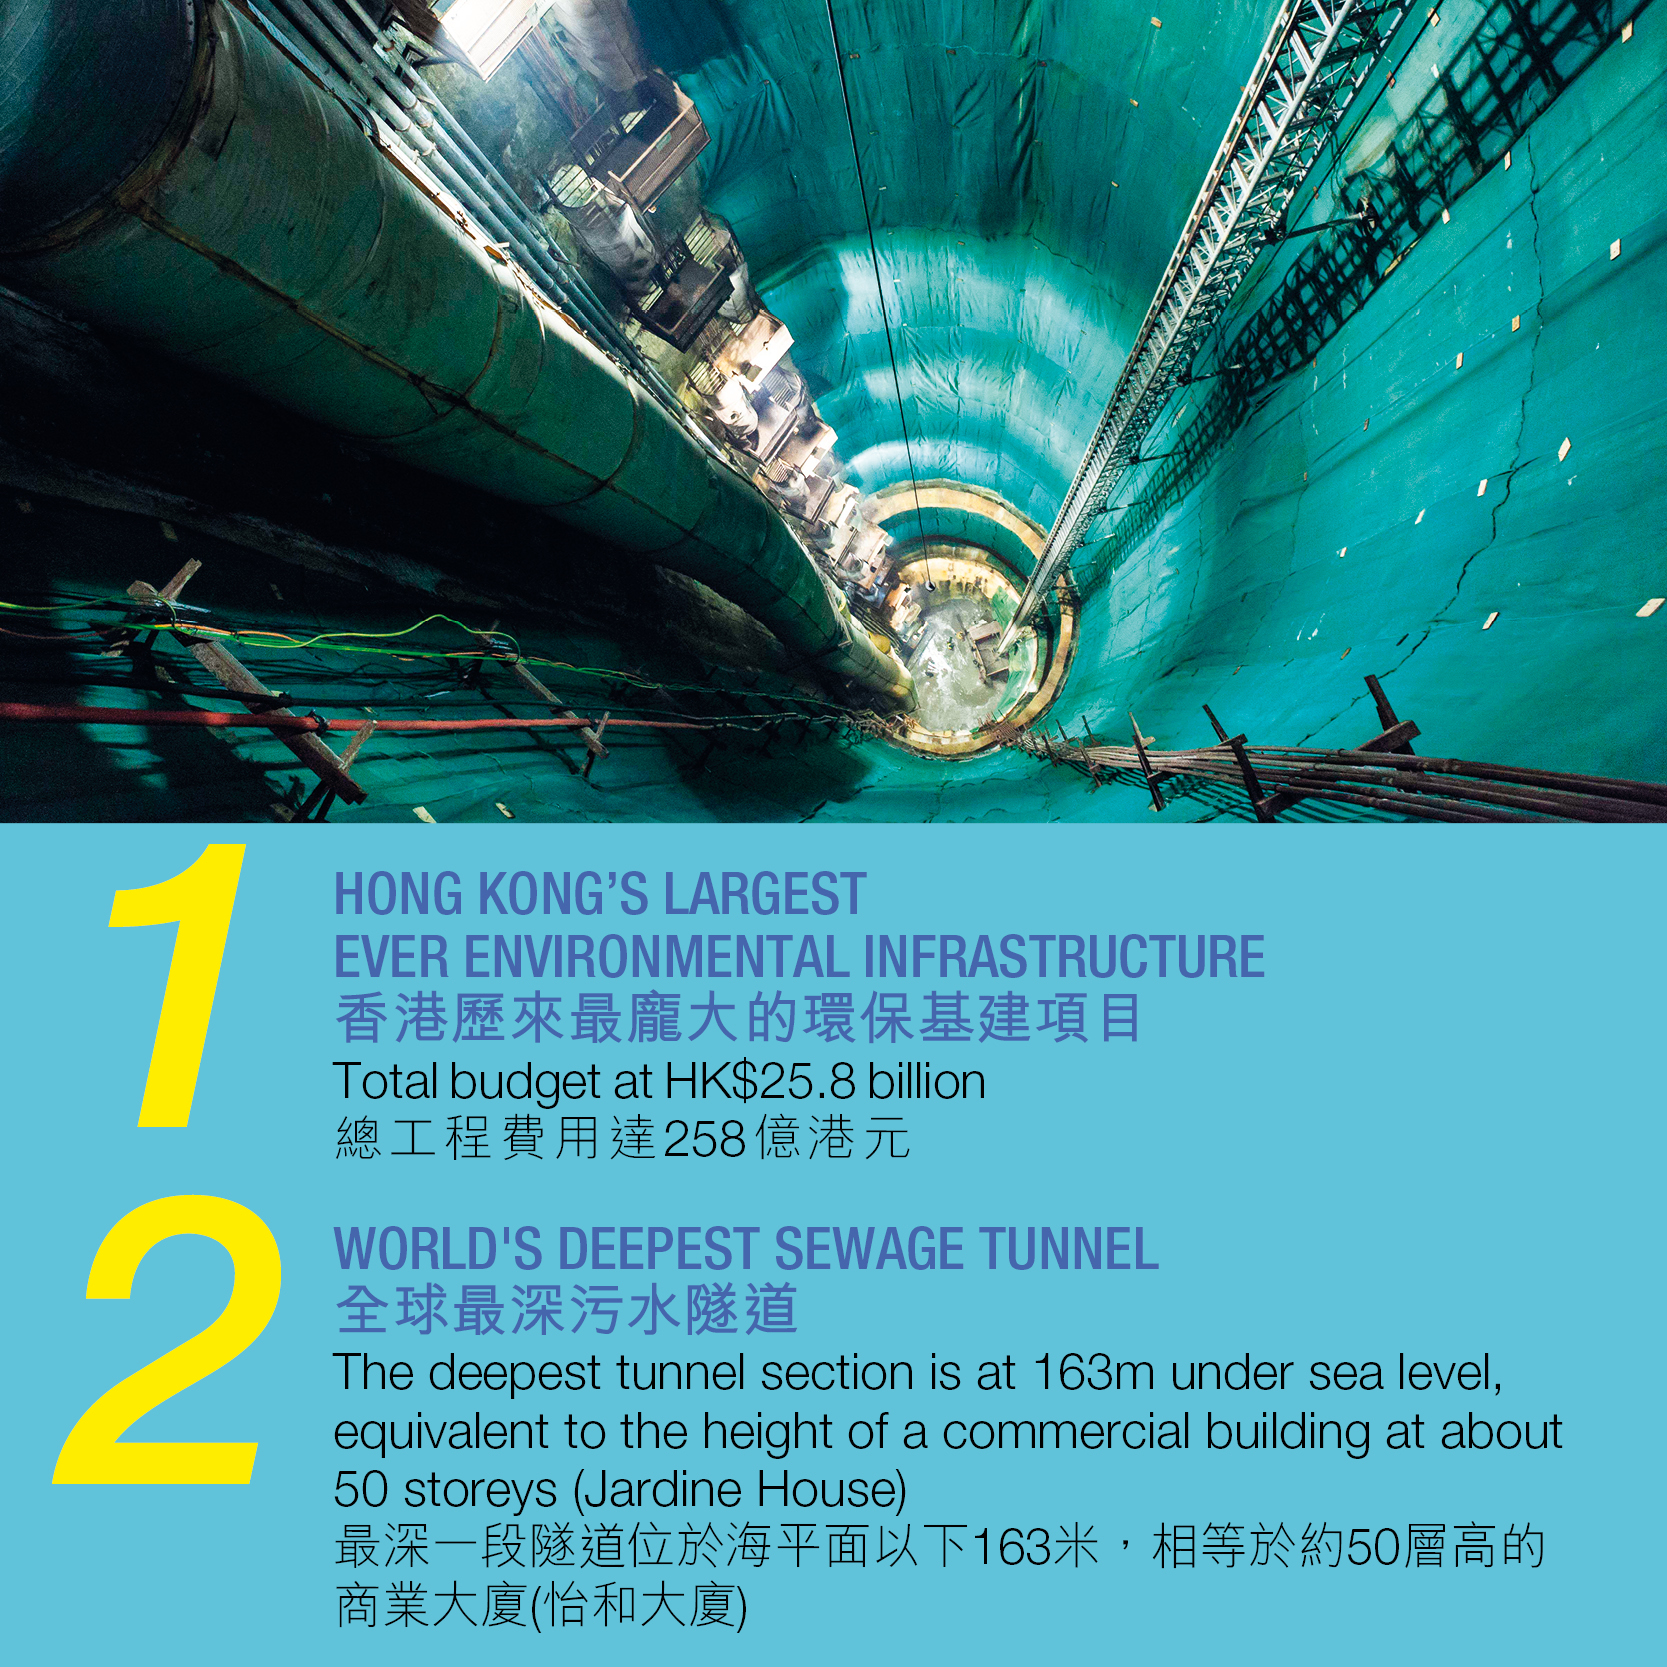 1.香港歷來最龐大的環保基建項目總工程費用達258億港元 2. 全球最深污水隧道